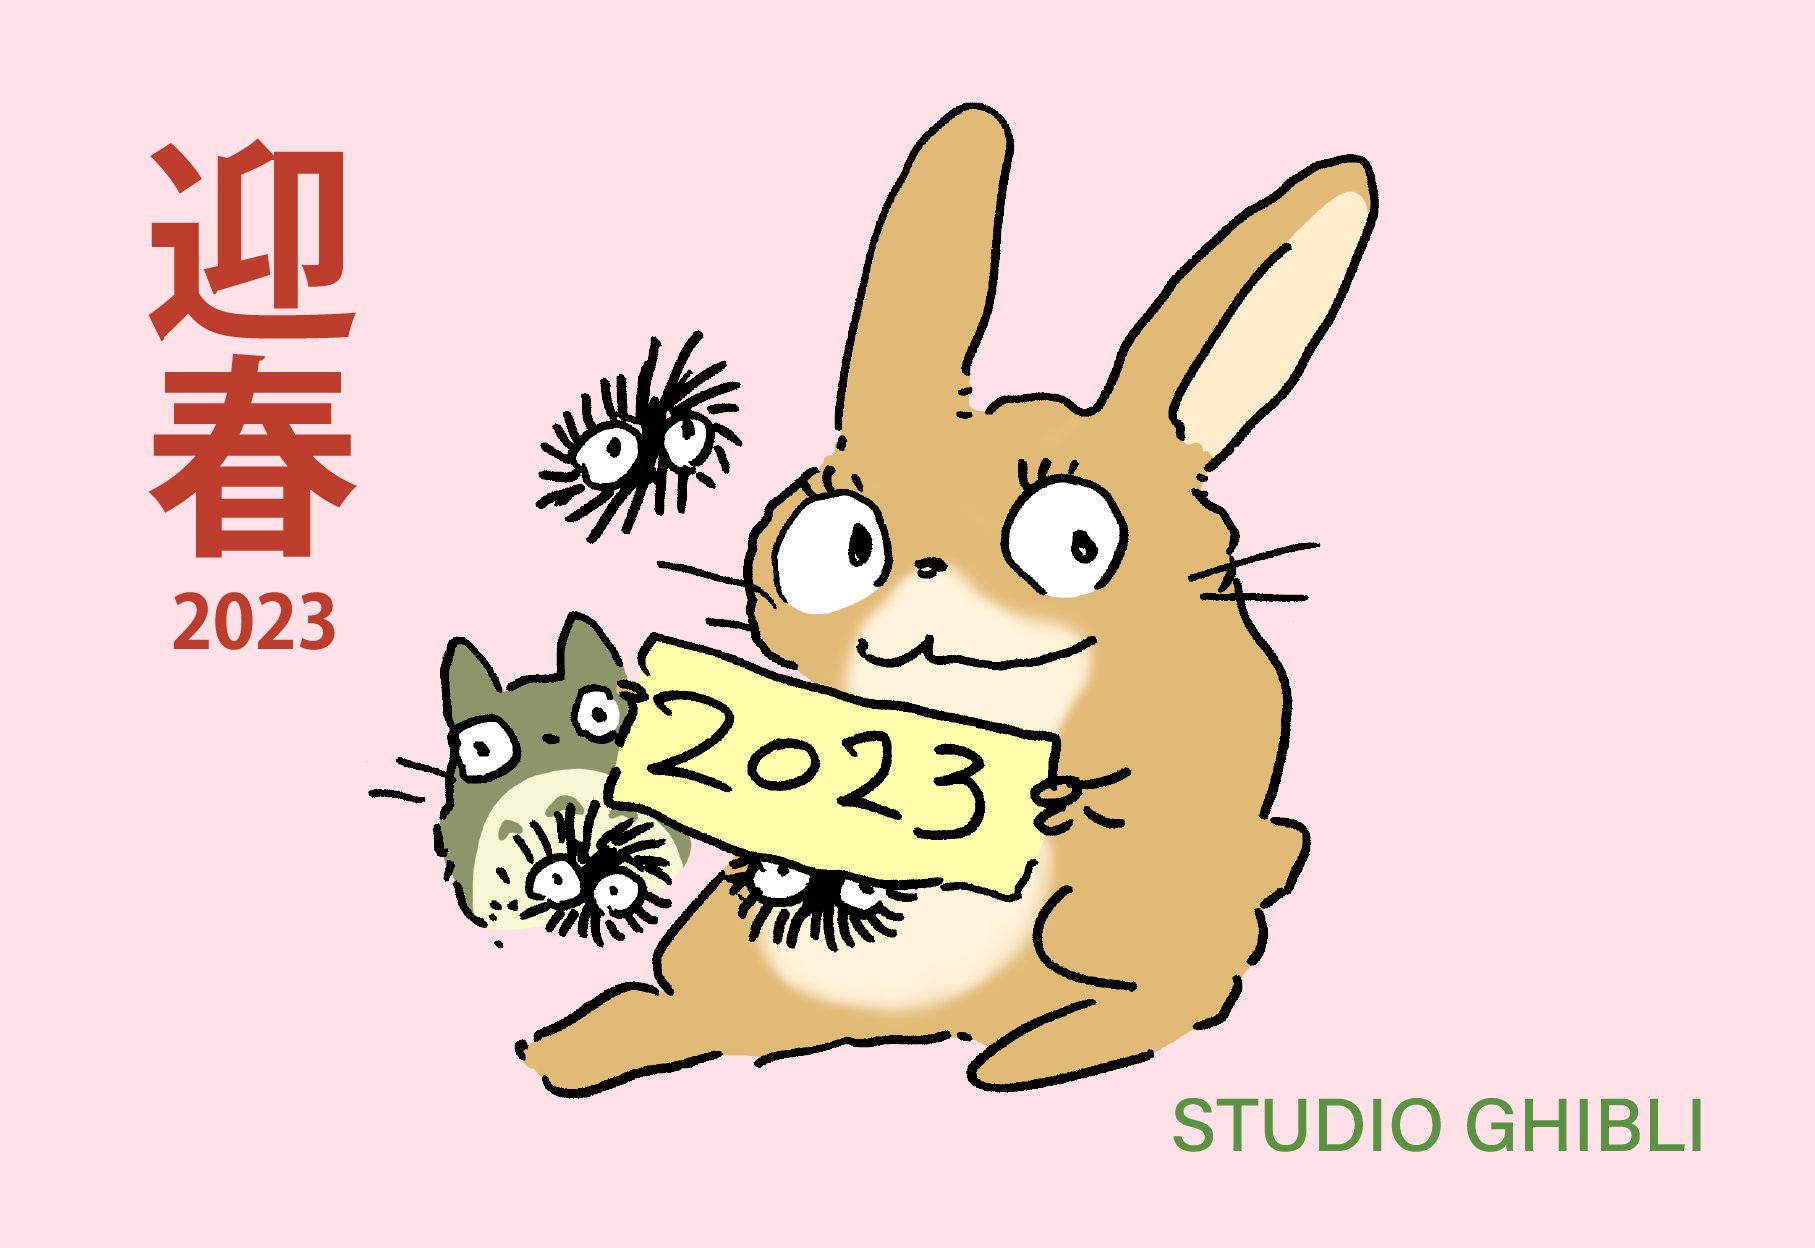 Studio Ghibli 2023 Arte de Año Nuevo